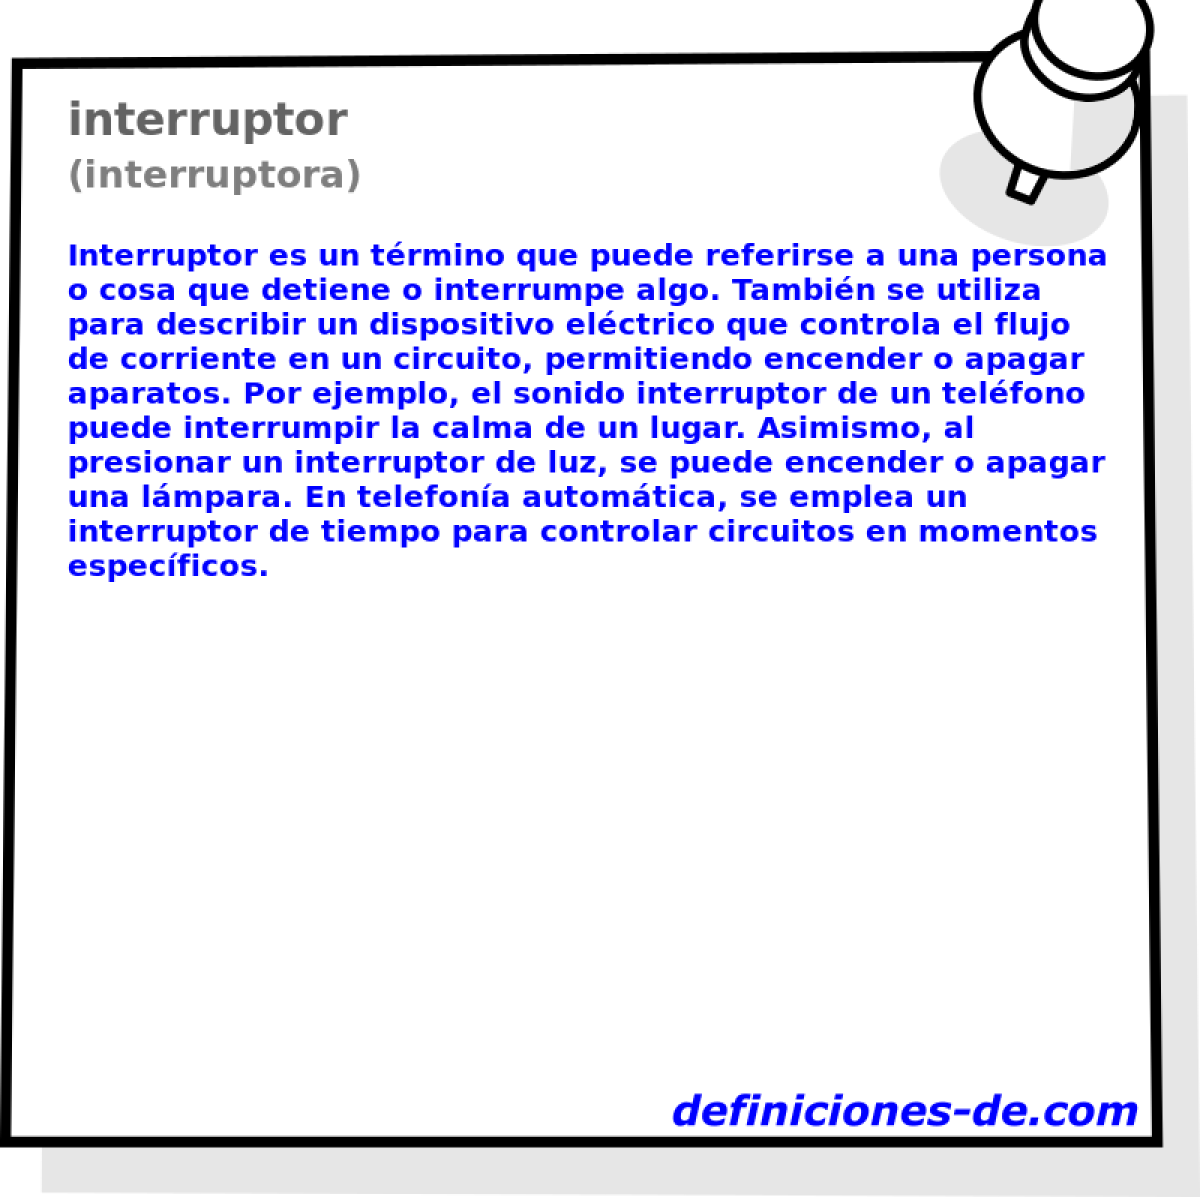 interruptor (interruptora)